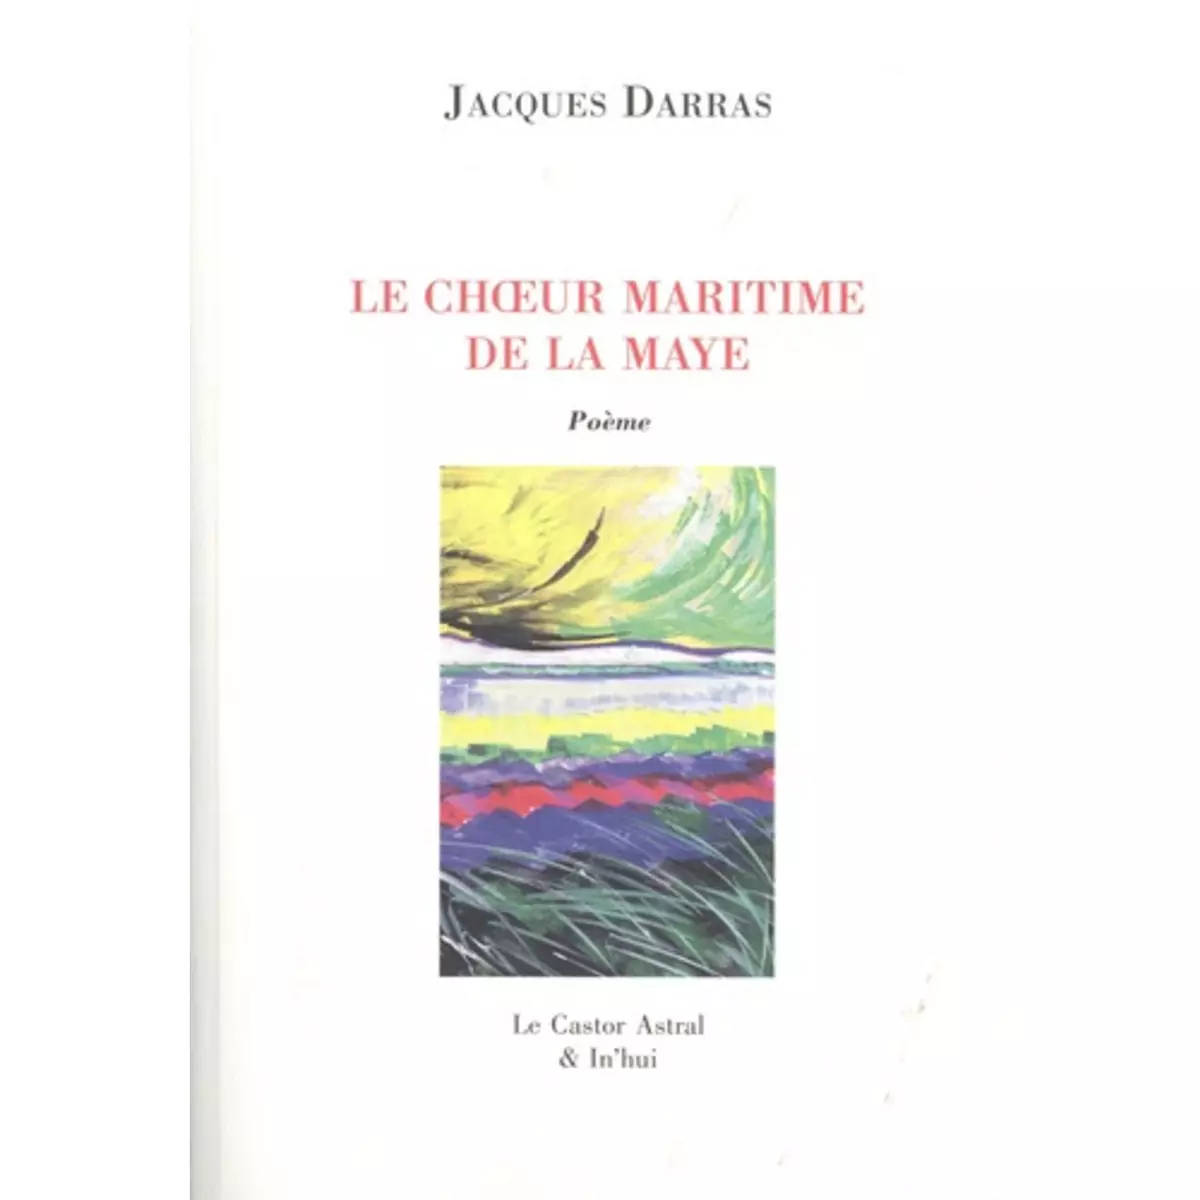  LE CHOEUR MARITIME DE LA MAYE, Darras Jacques